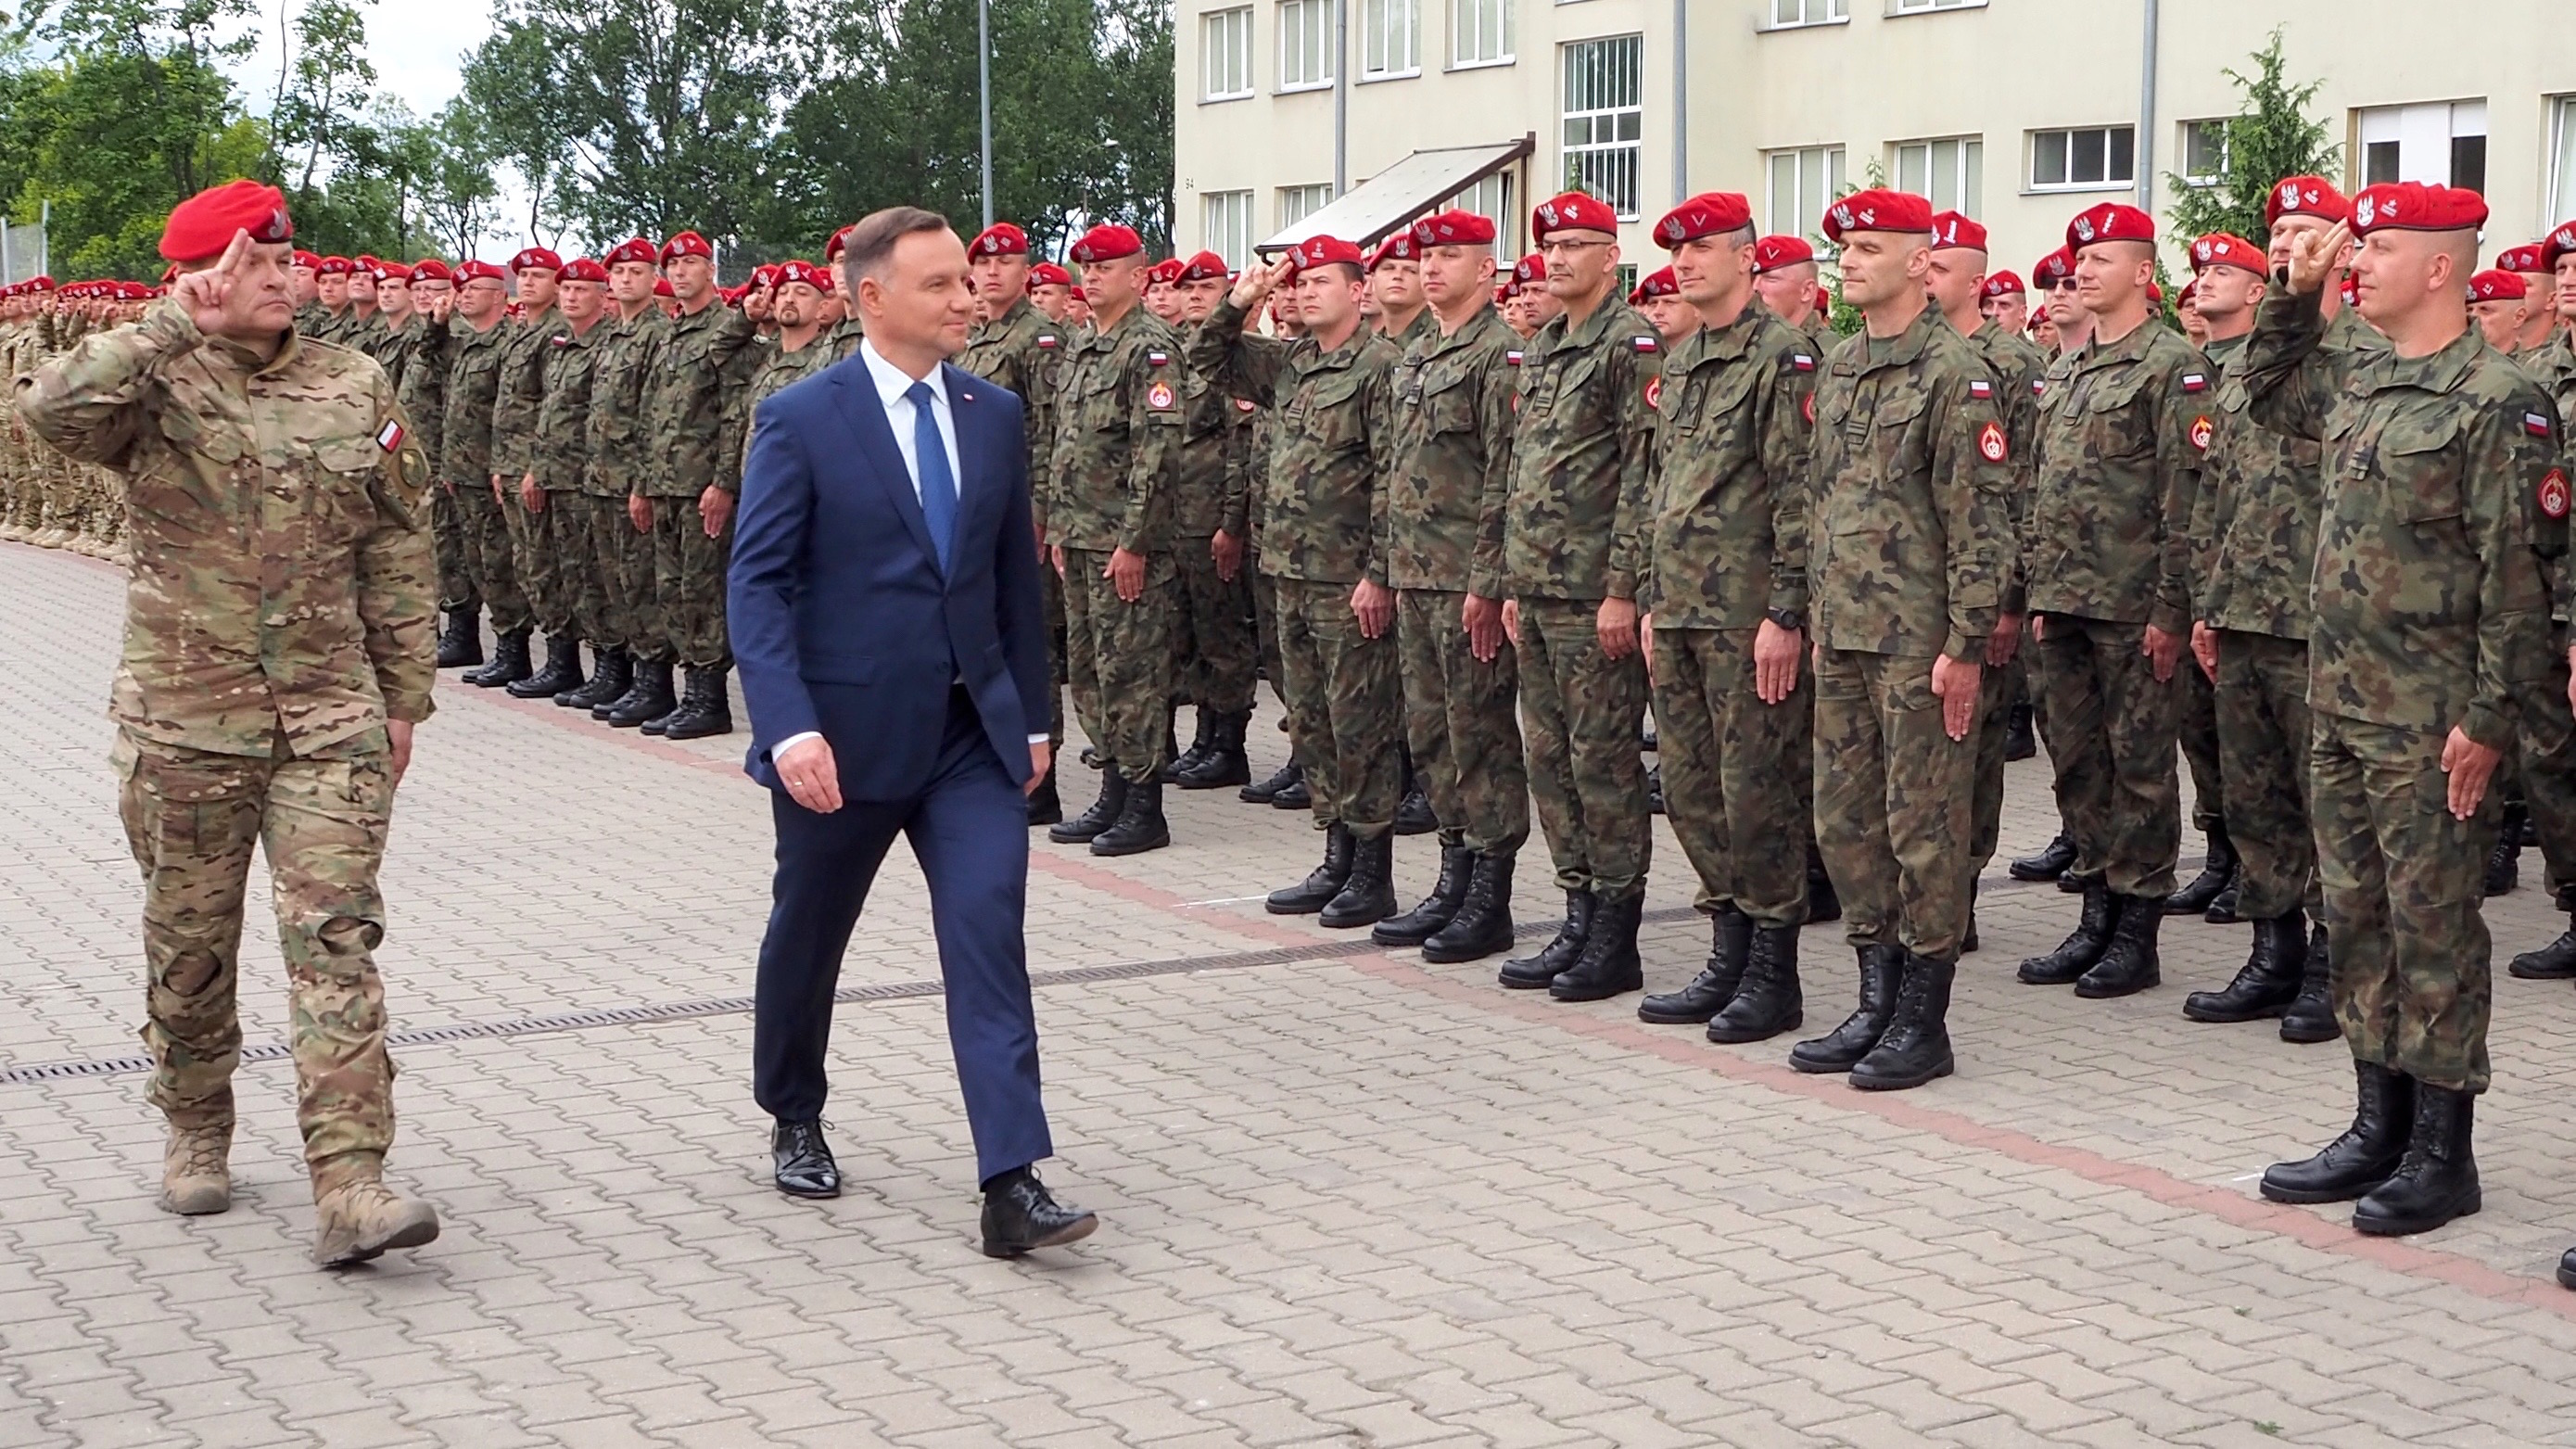 Prezydent Andrzej Duda na święcie Żandarmerii Wojskowej. Fot. Rafał Lesiecki / Defence24.pl